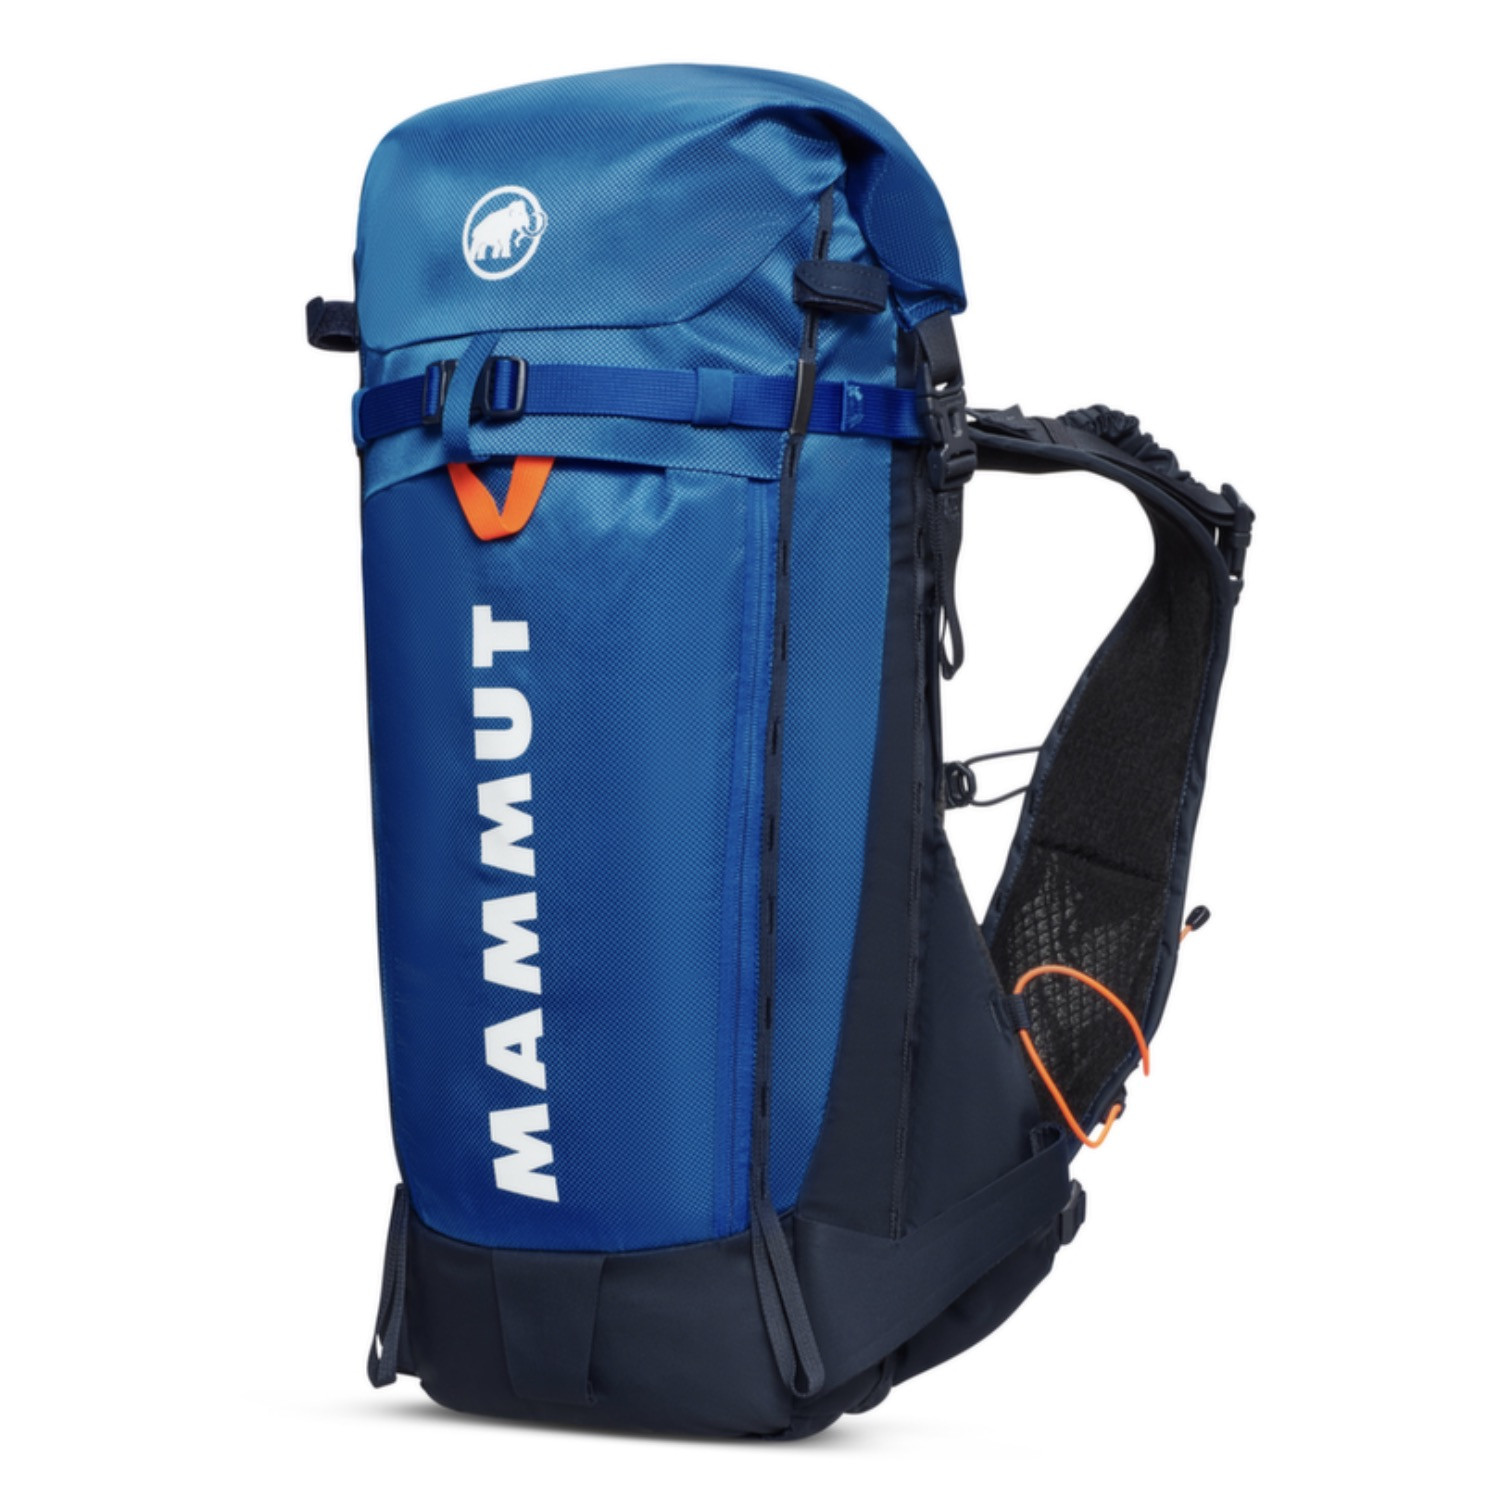 Mammut Aenergy ST 20-25 Backpack | The Ski Monster